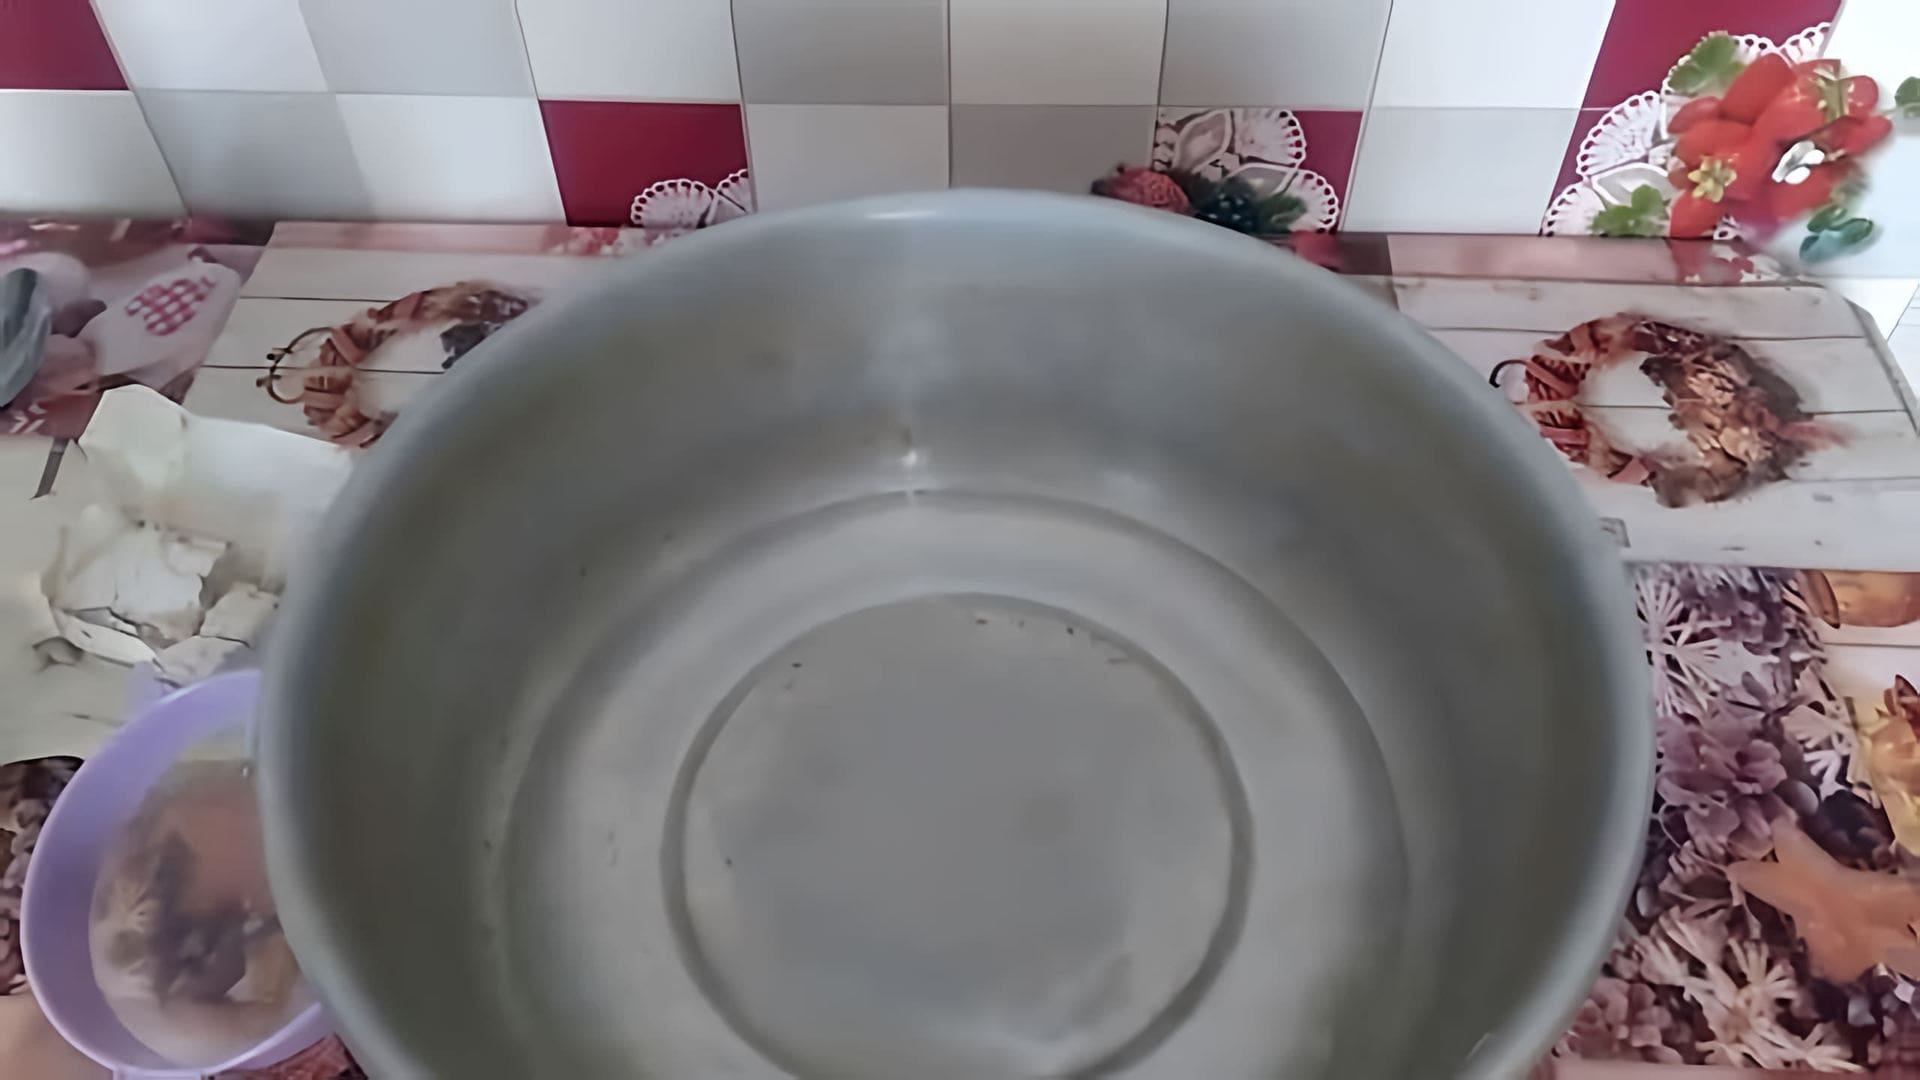 Видео демонстрирует старый рецепт для приготовления кислых блинов, используя только воду, соль и сахар